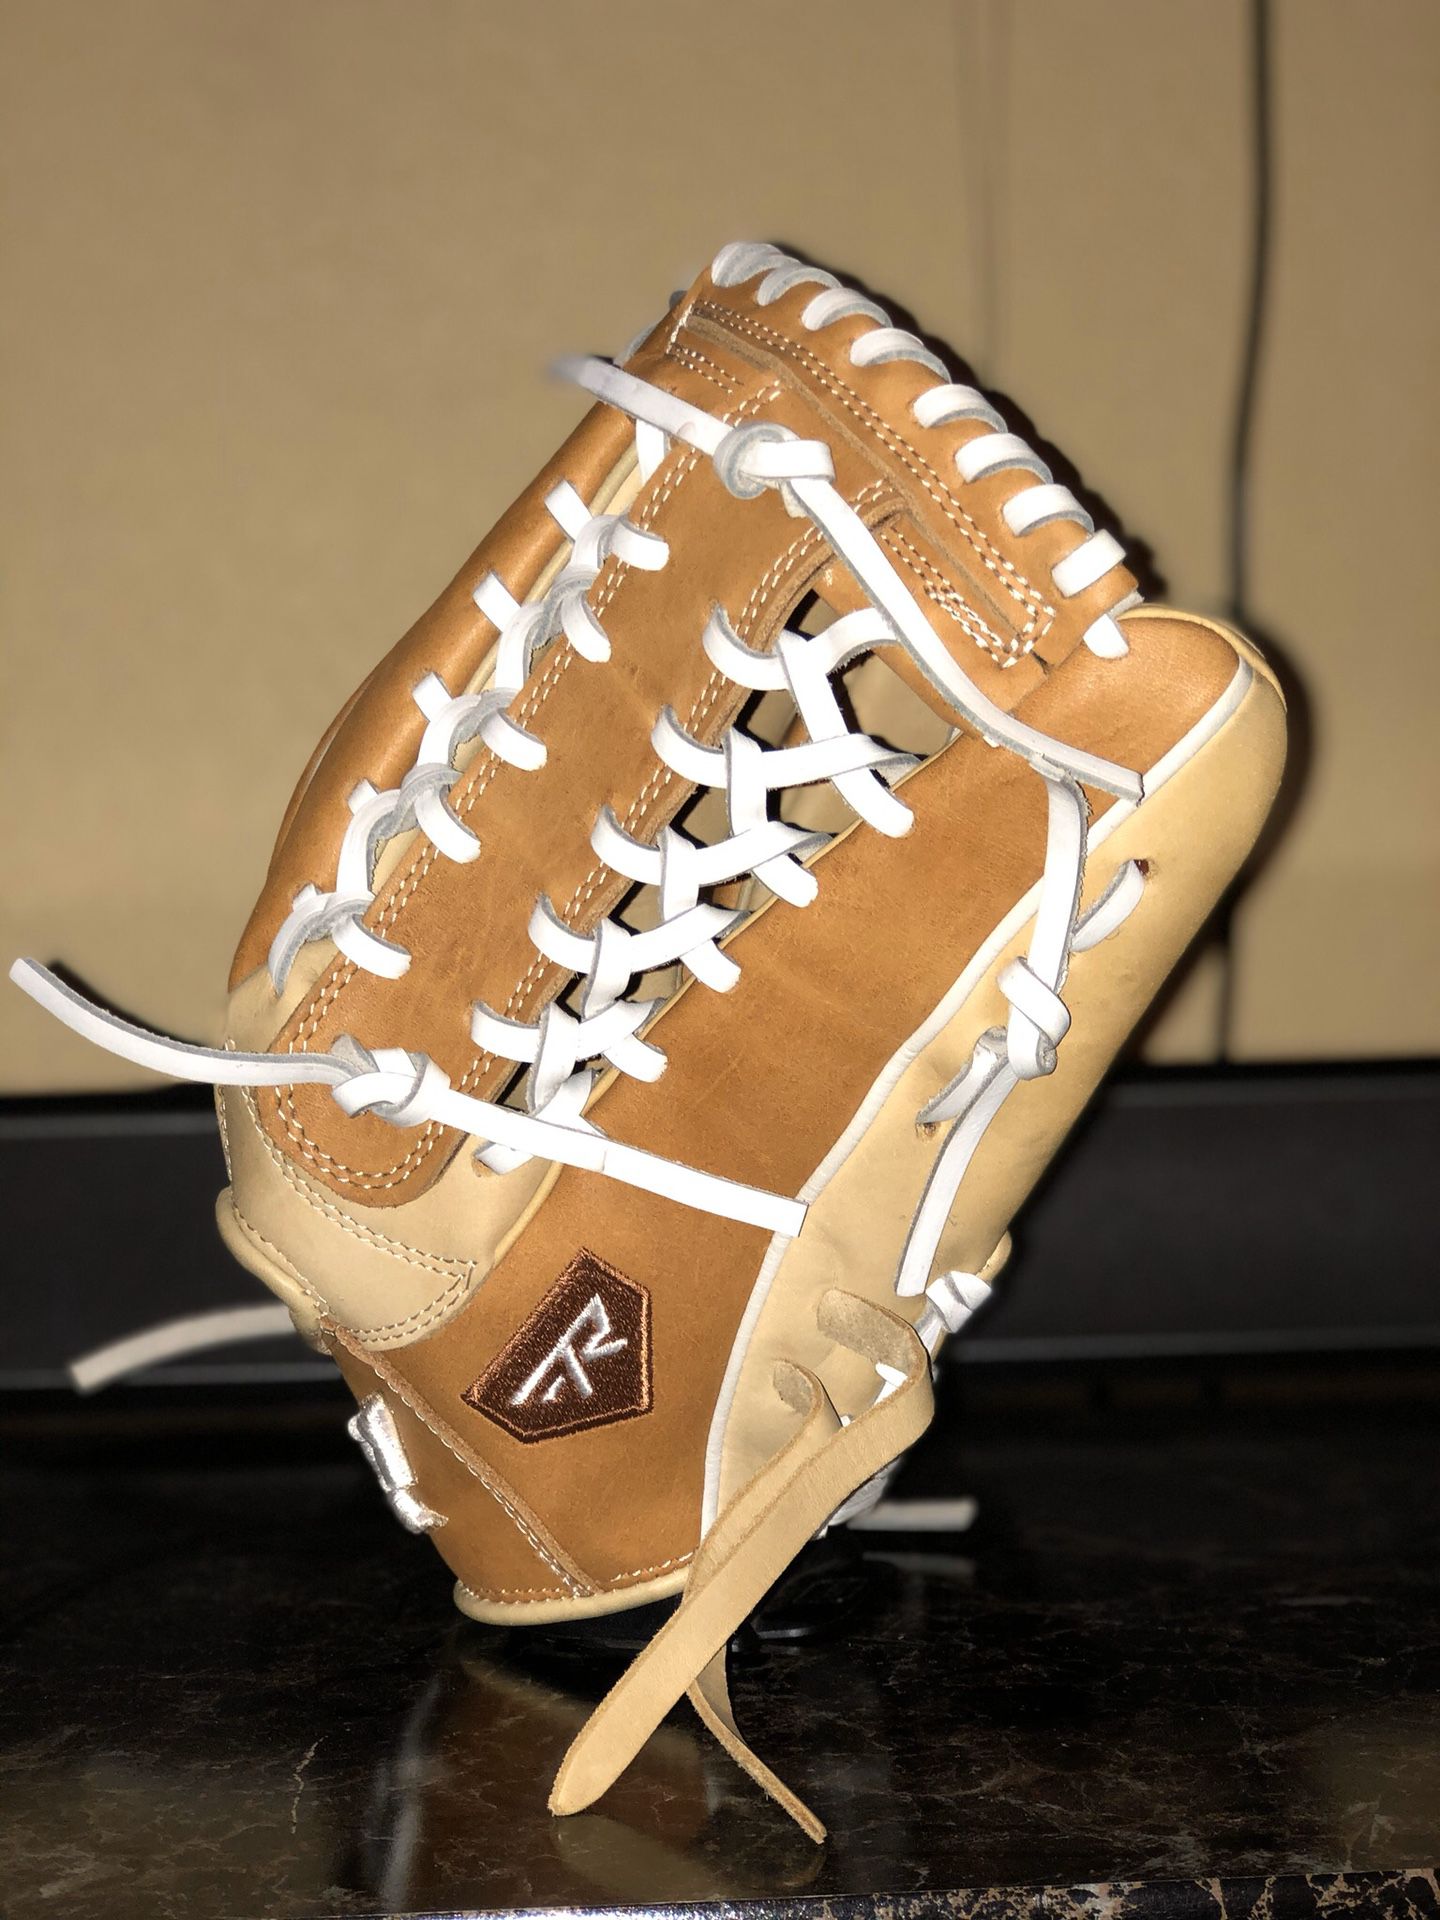 Baseball / Softball Gloves